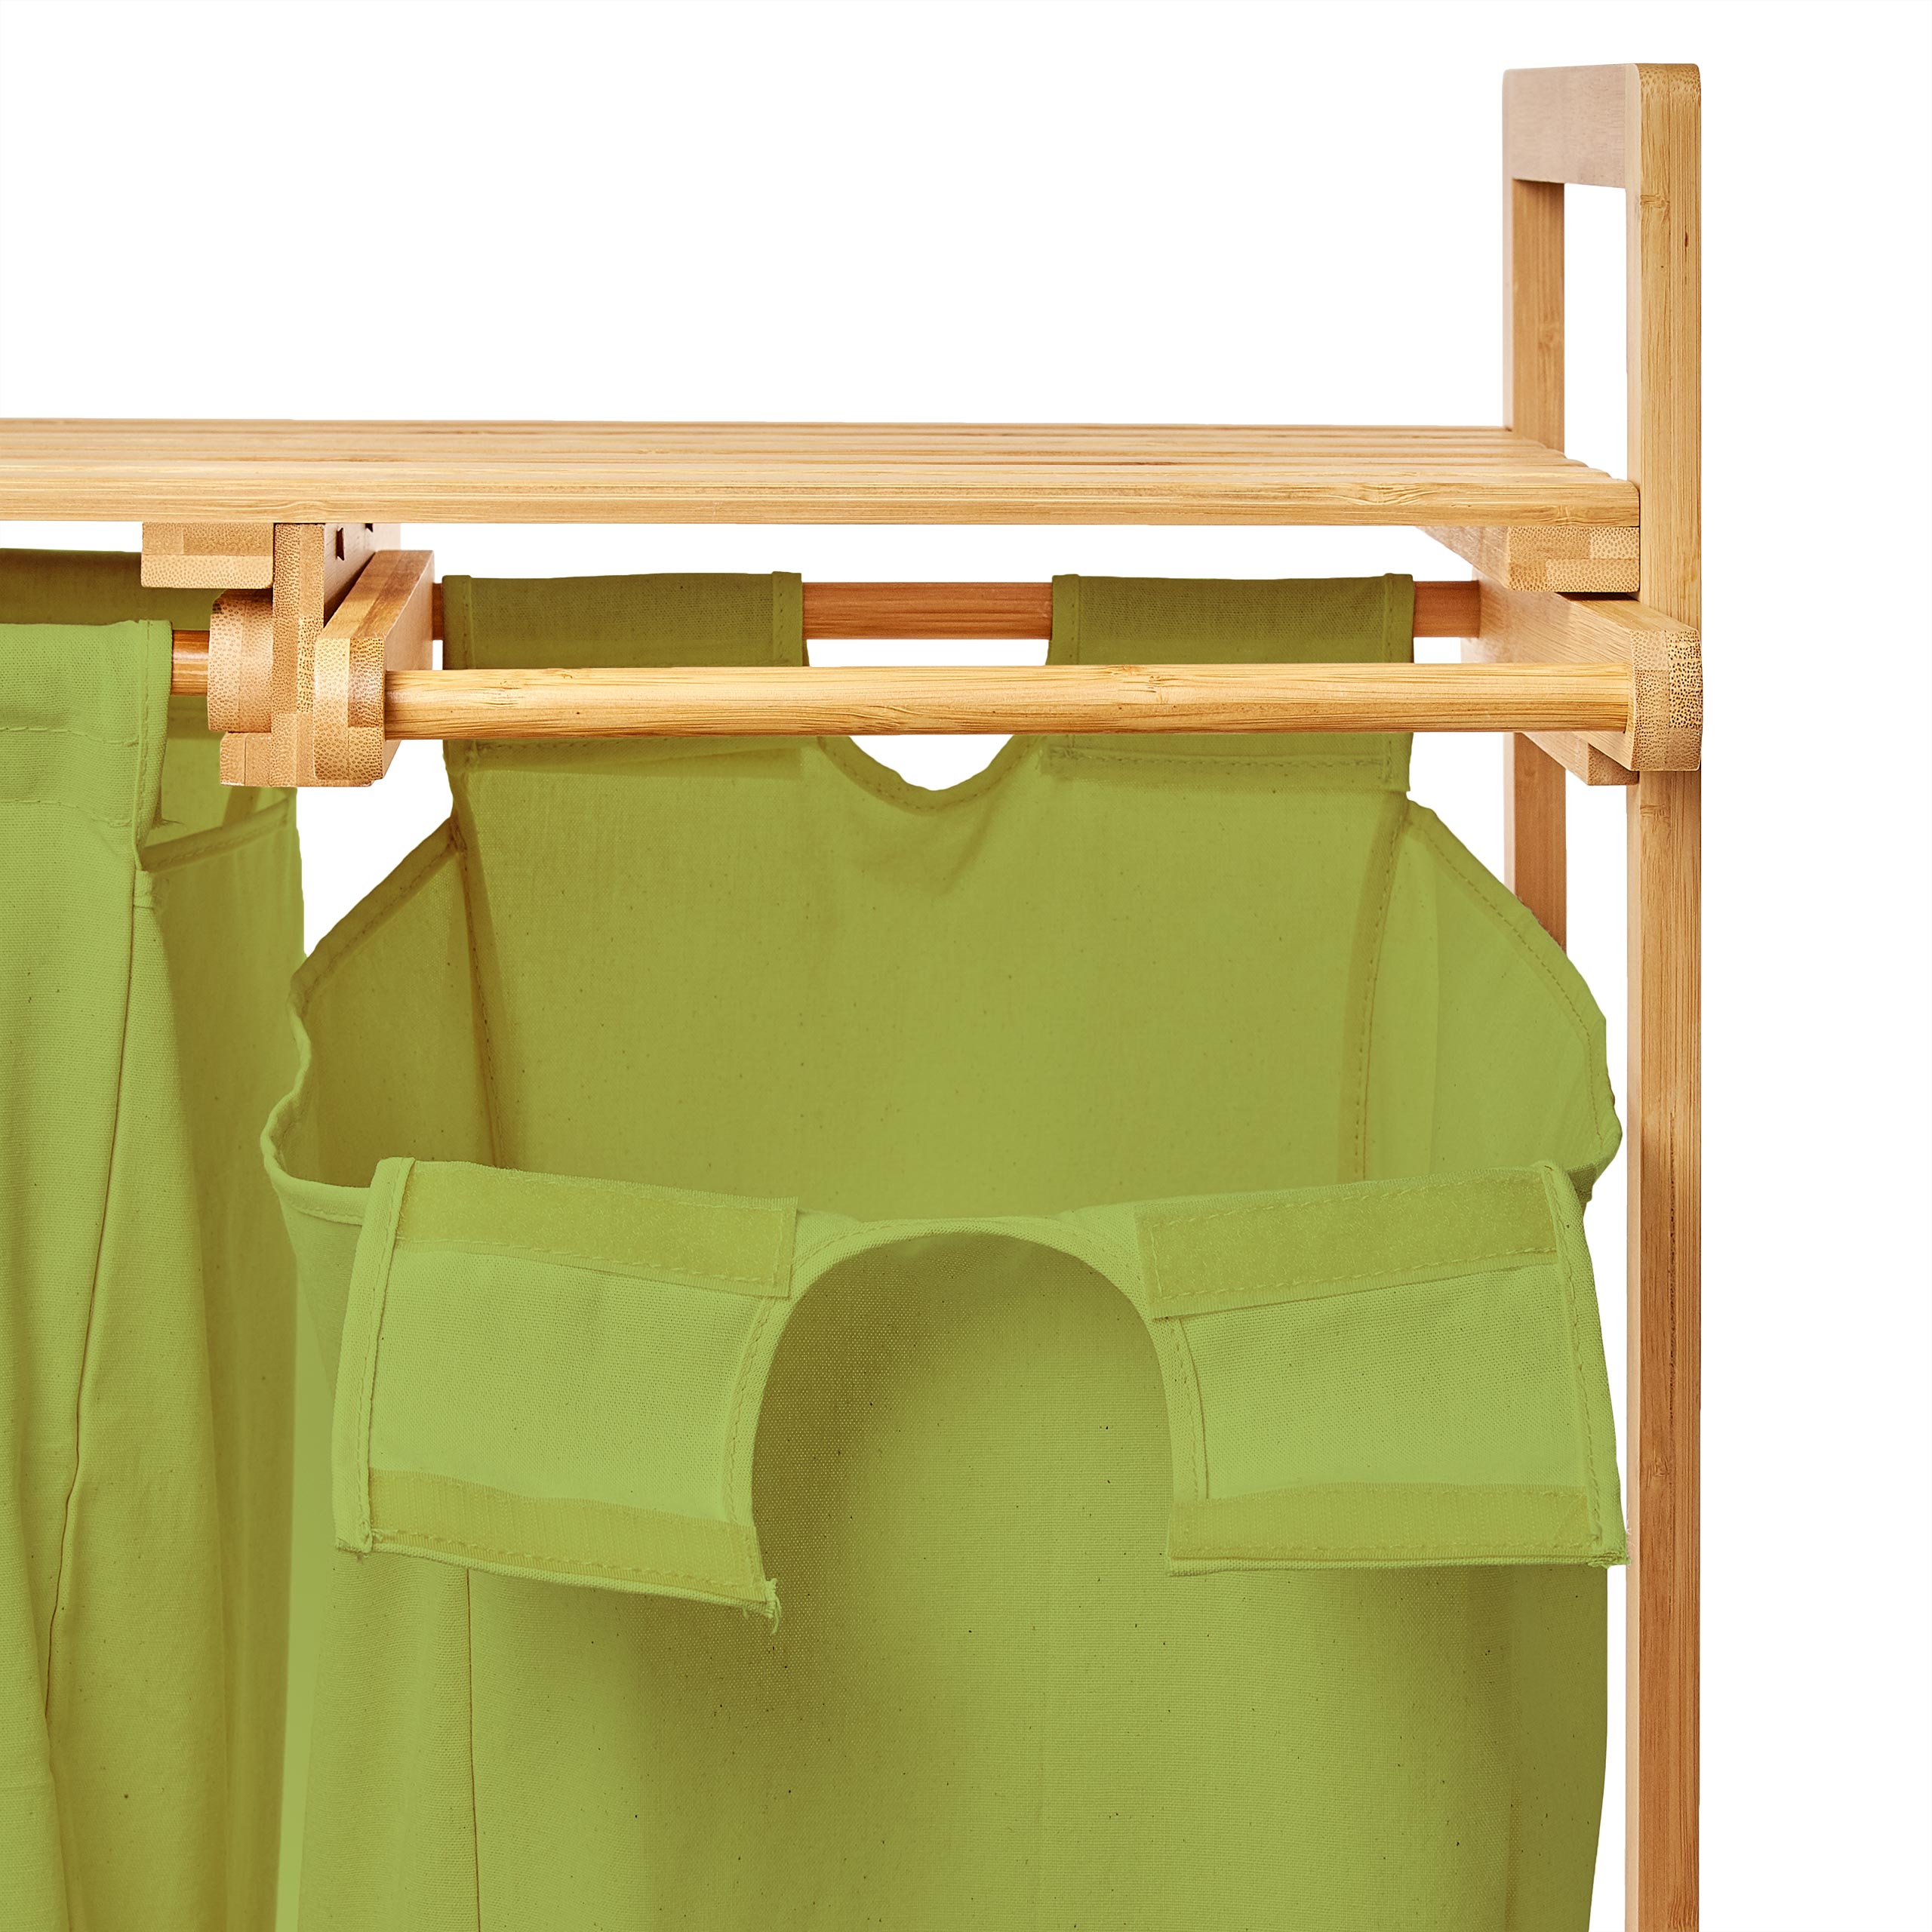 Bambus Wäschekorb mit 2 ausziehbaren Wäschesacken - 73 x 64 x 33 cm - Grün